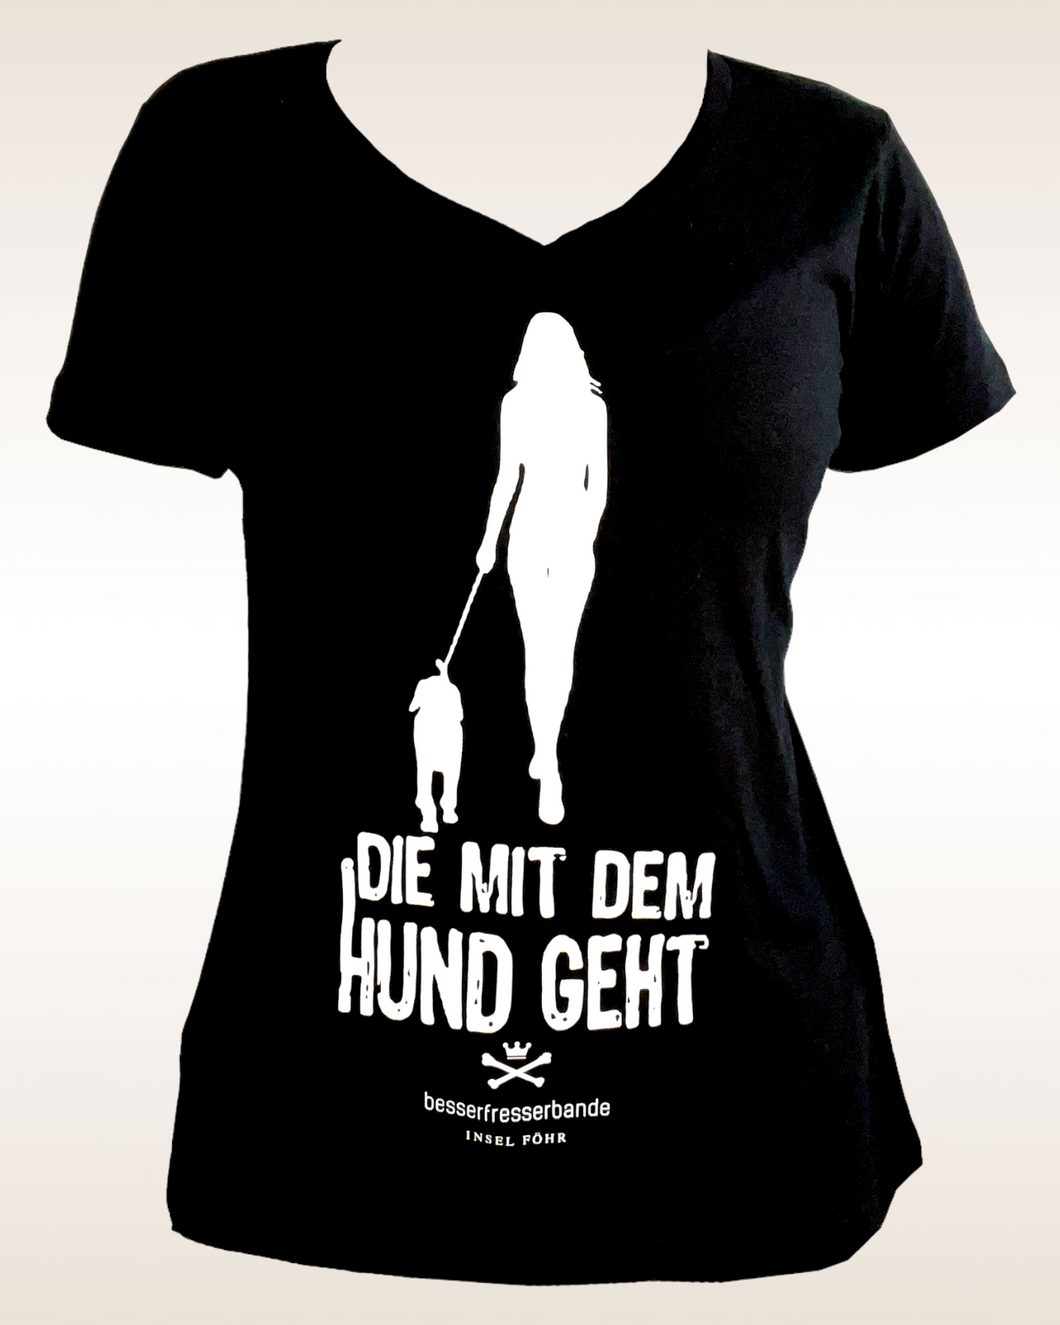 'DIE MIT DEM HUND GEHT' Shirt